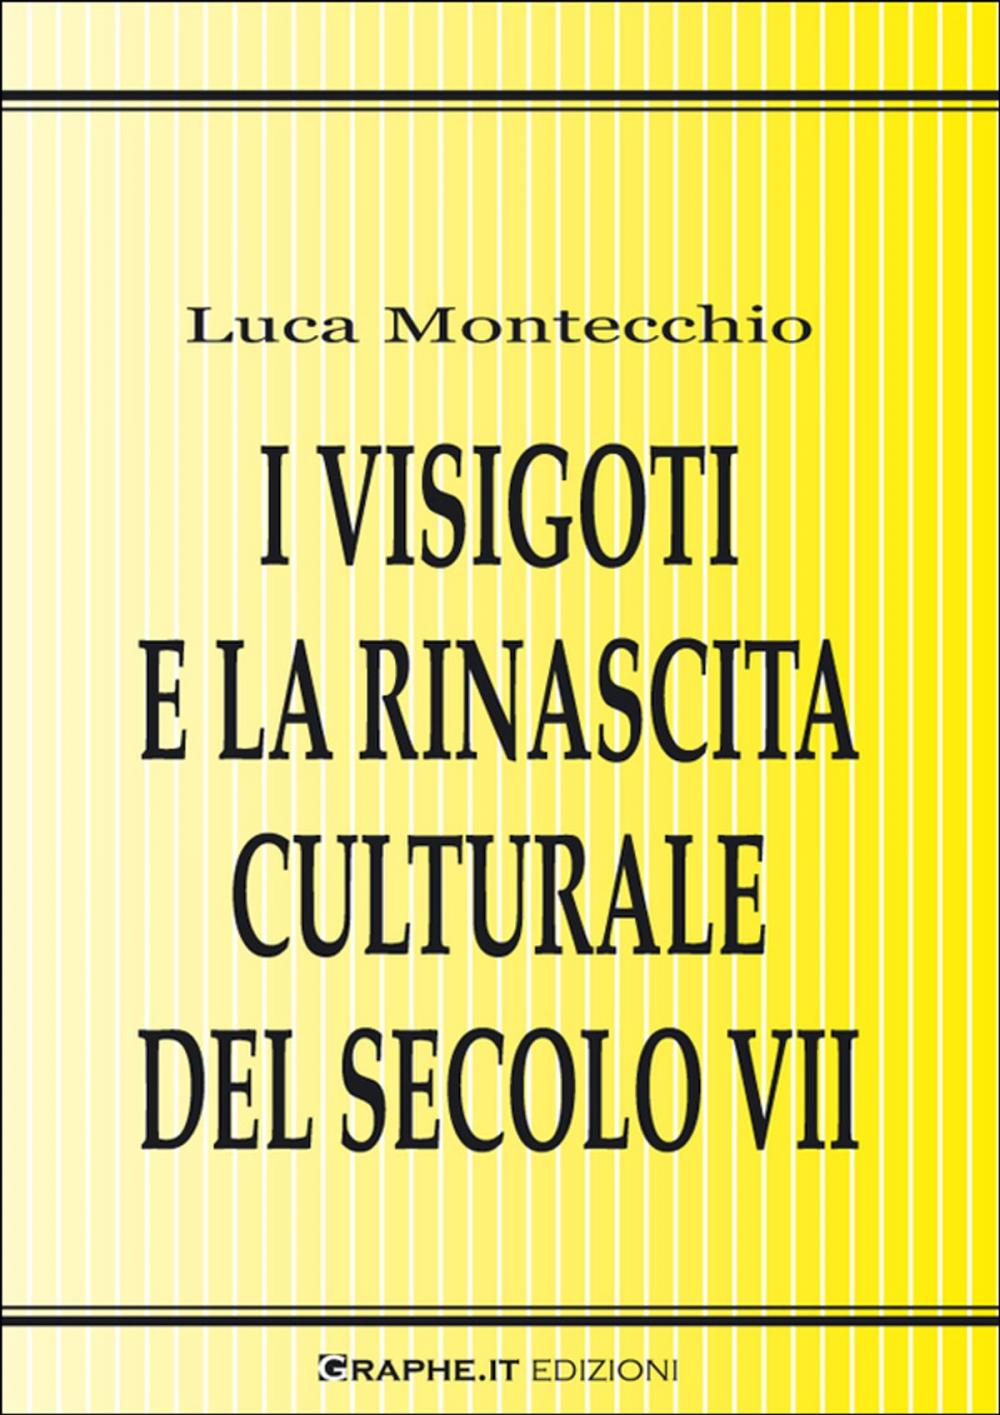 Big bigCover of I Visigoti e la rinascita culturale del secolo VII